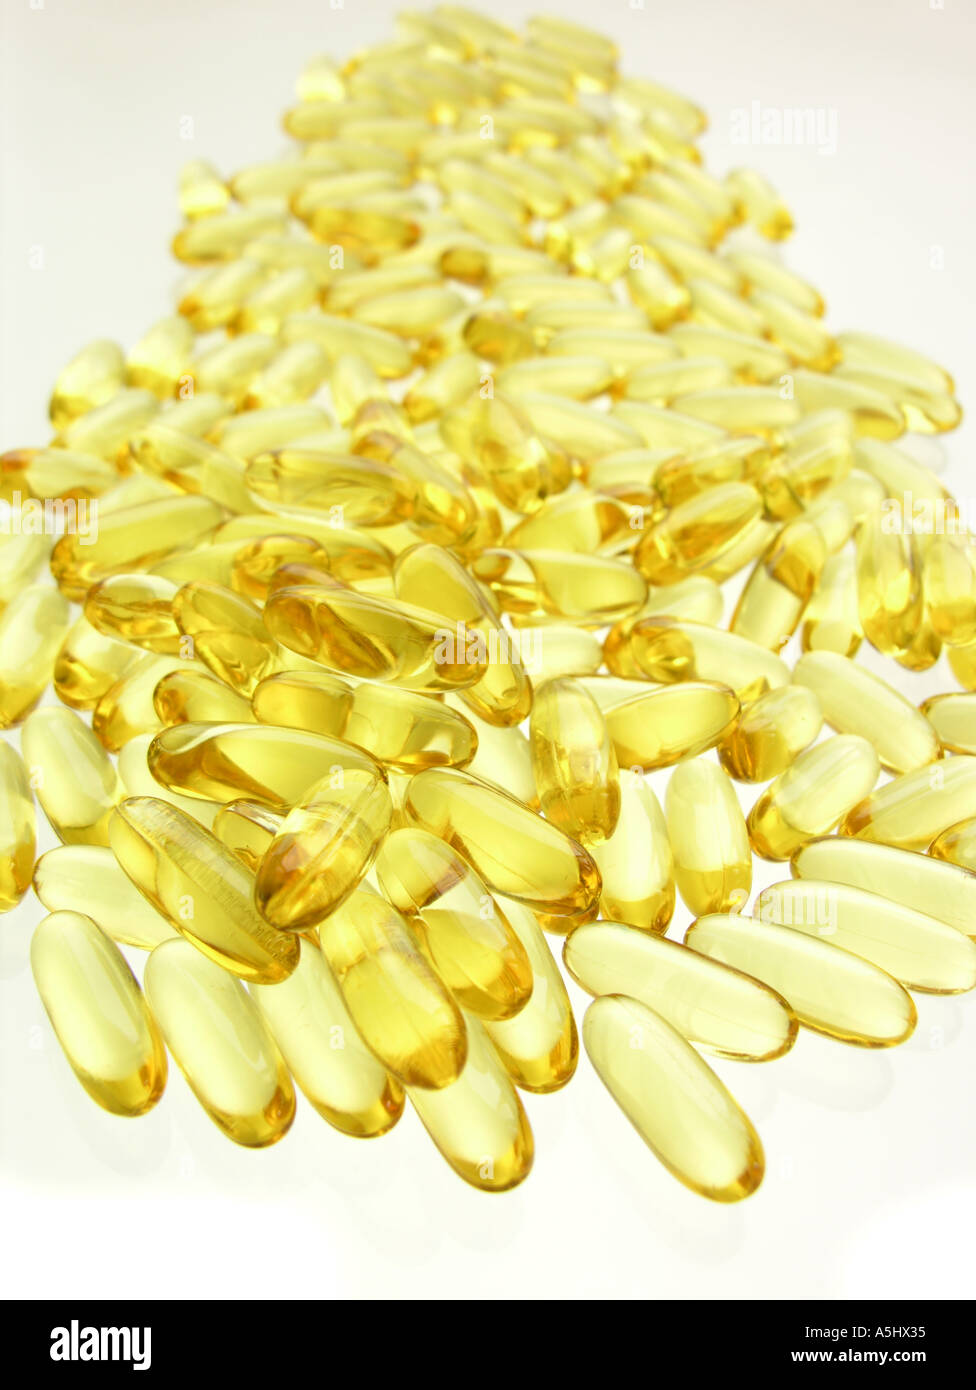 Fish oil capsules Stock Photo